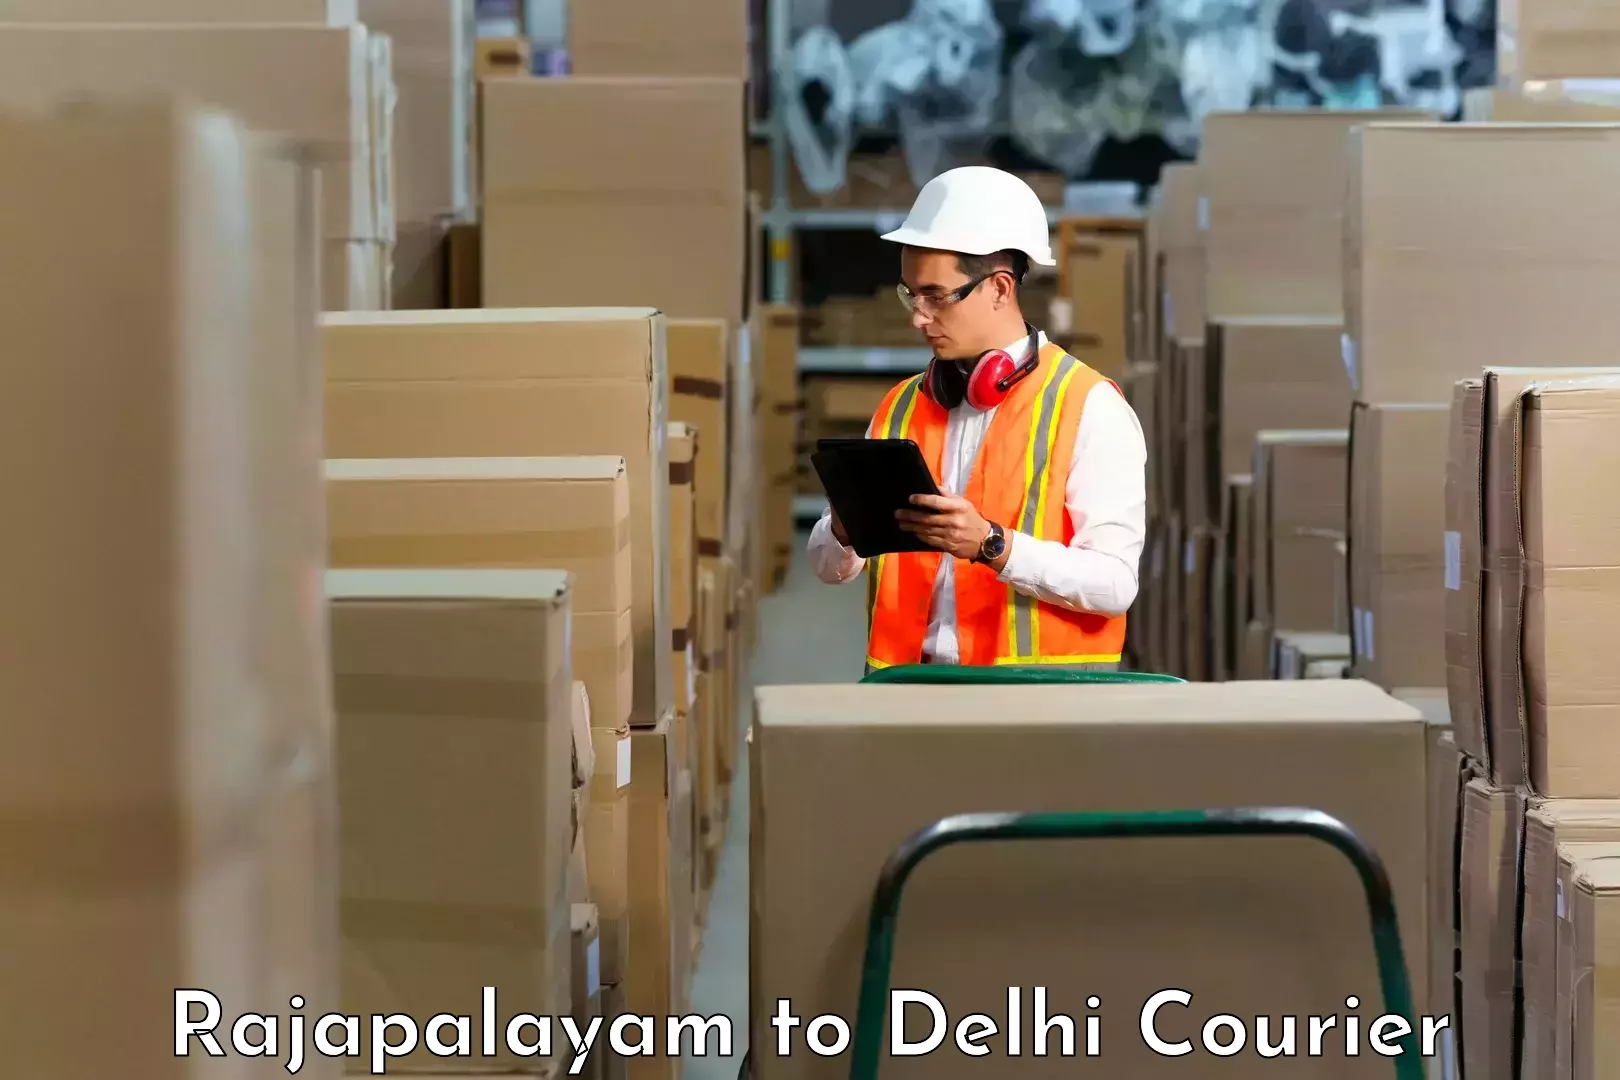 Individual parcel service Rajapalayam to IIT Delhi